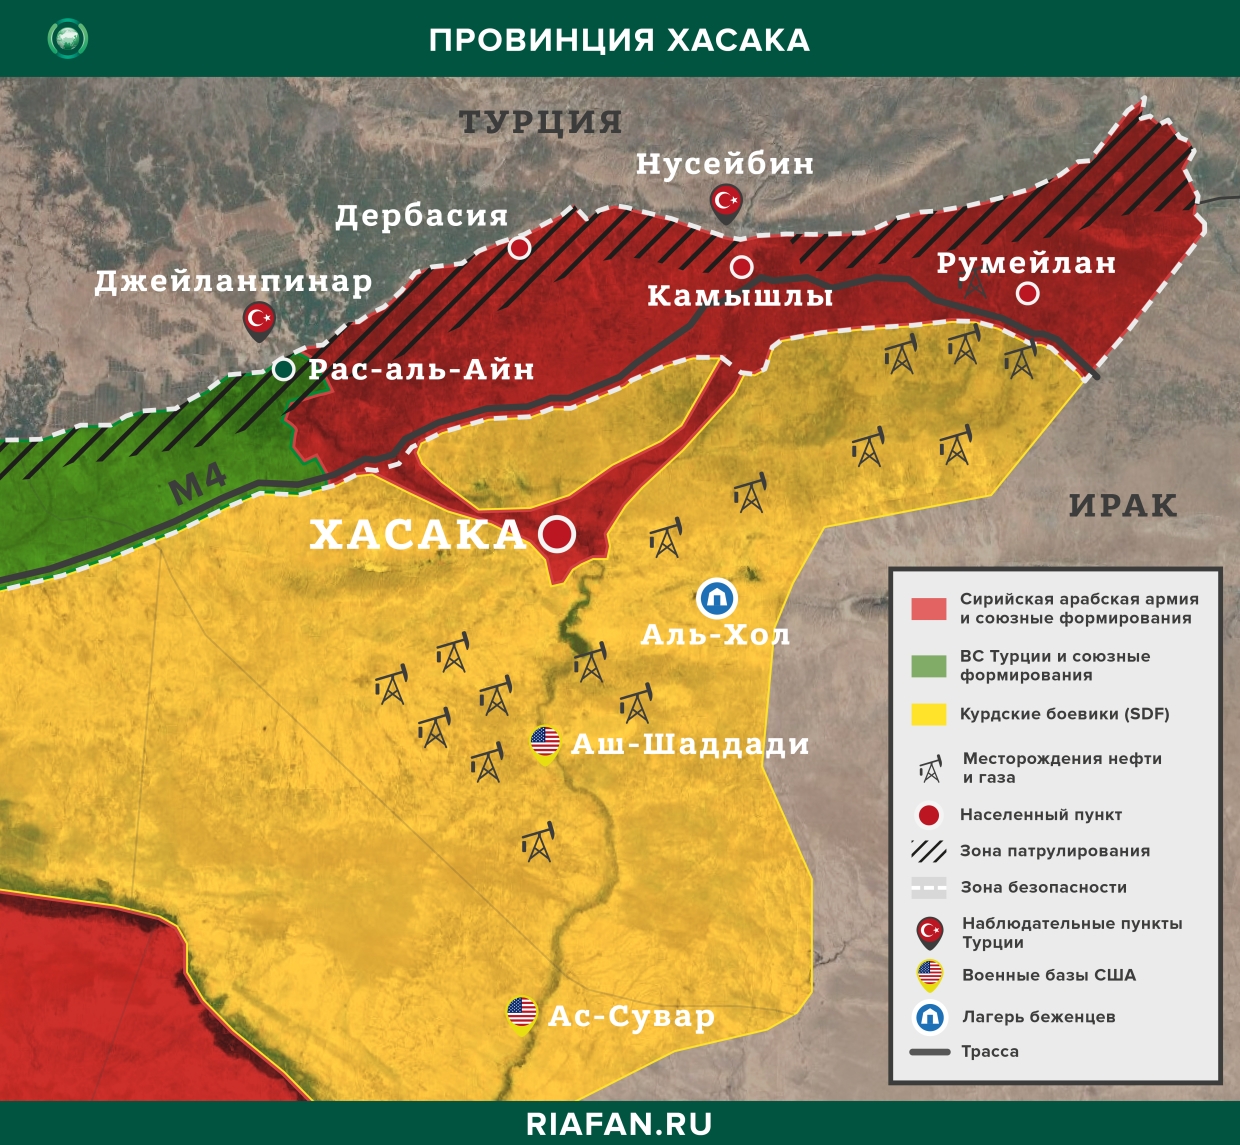 叙利亚每日结果 29 七月 06.00: 波坂恐怖袭击, 土耳其武装部队在伊德利卜与 HTS 领导人举行会议